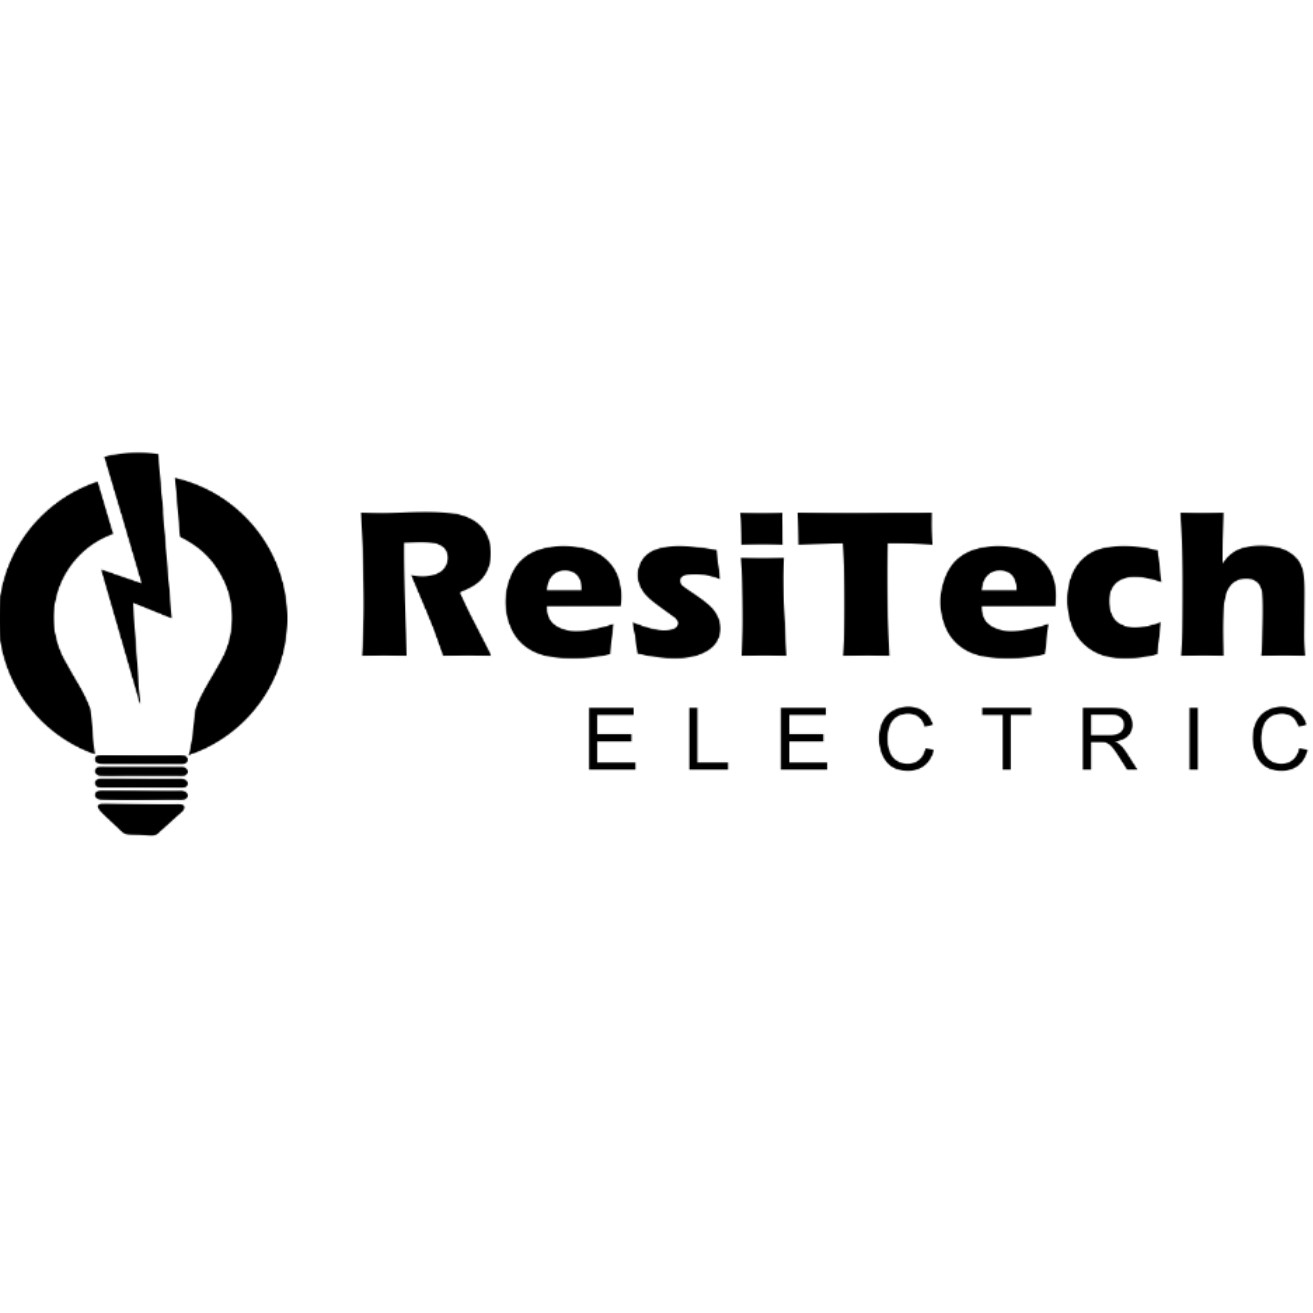 ResiTech Electric 39322 Hanninen Rd, Marengo Wisconsin 54855